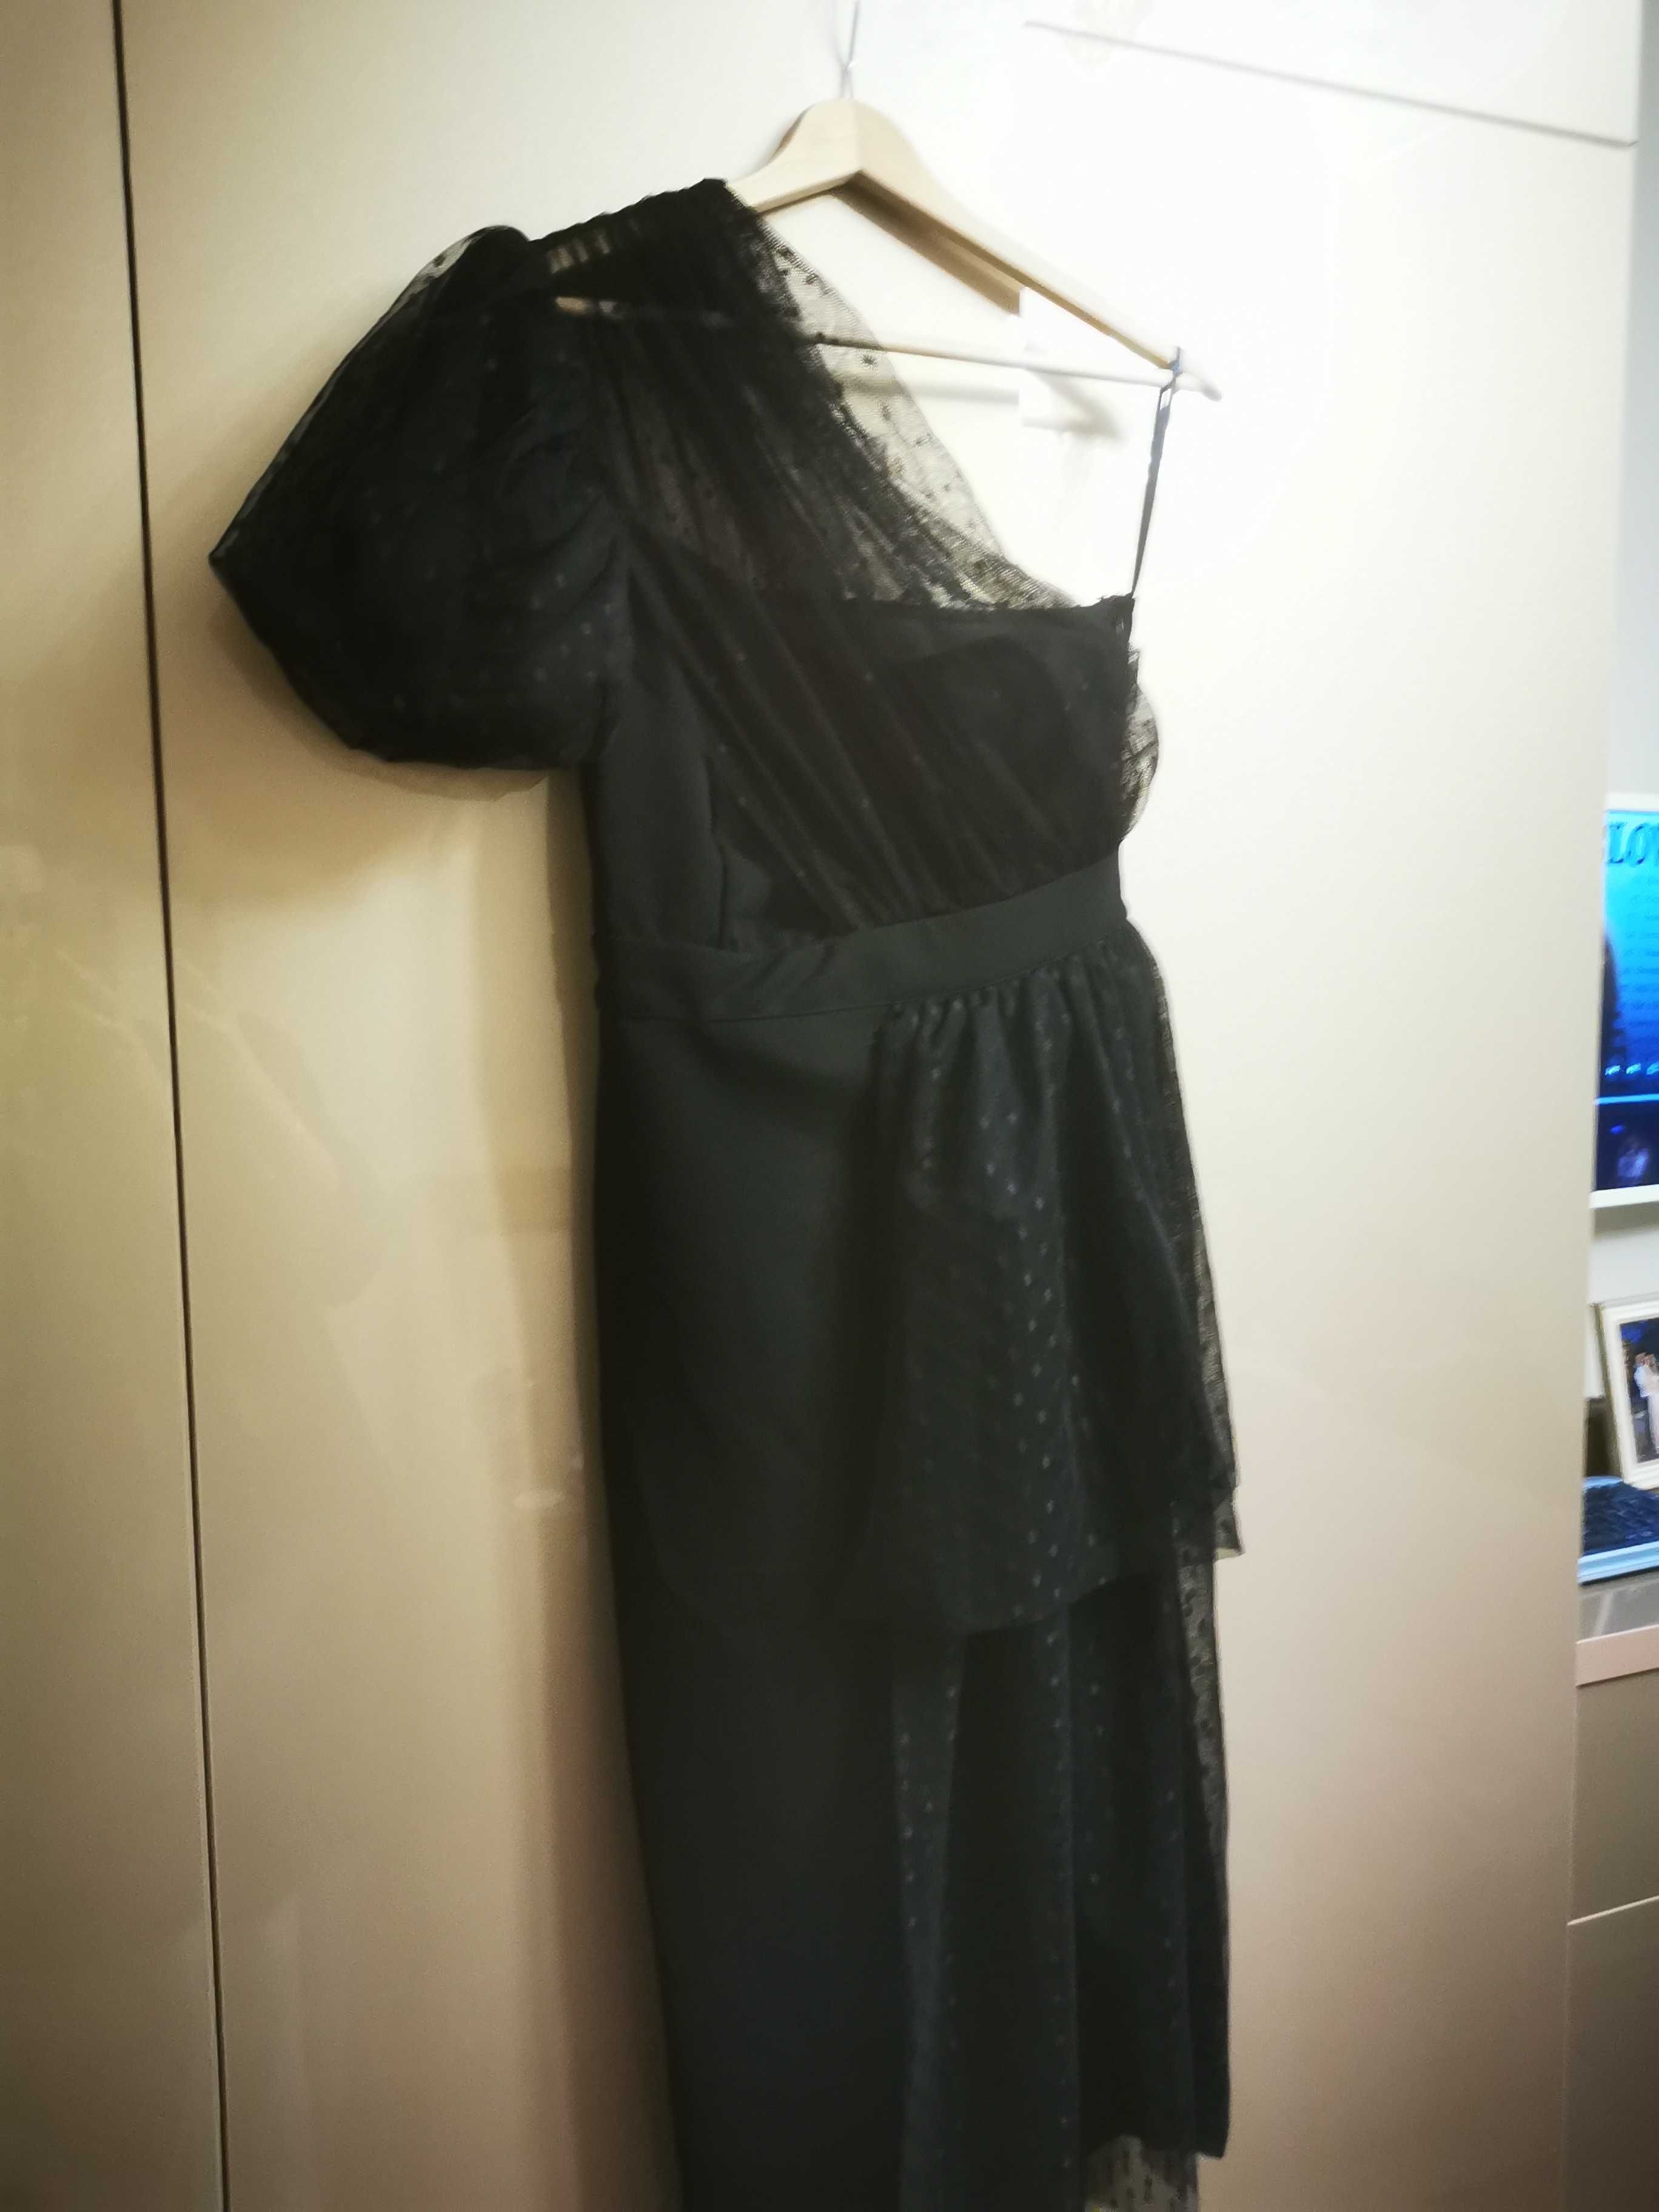 Черна ефектна рокля